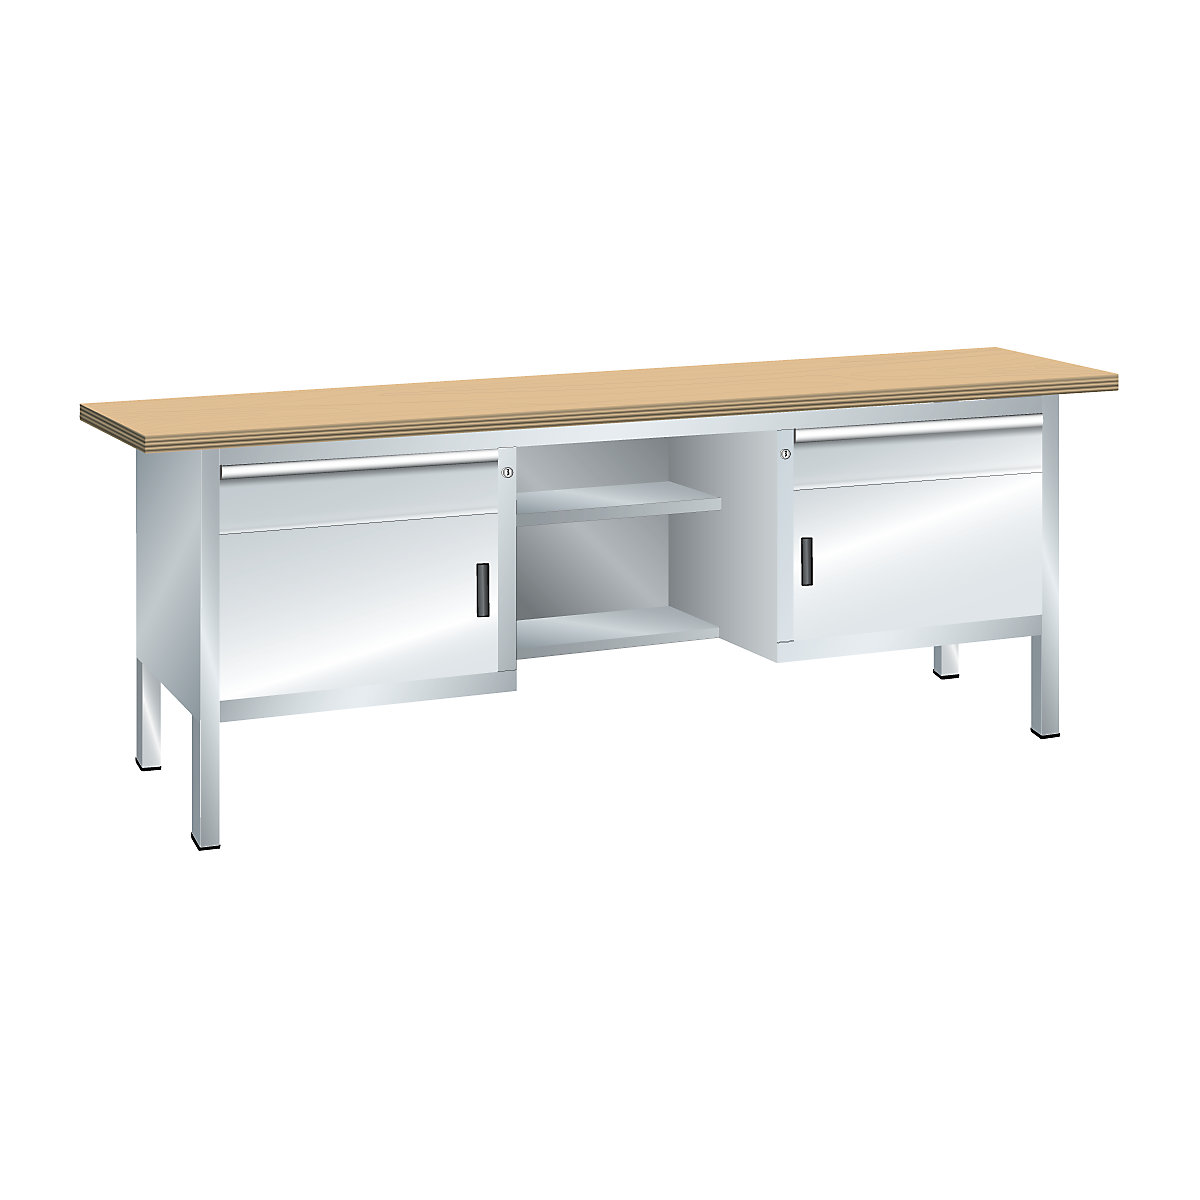 Dílenský stůl s deskou z překližky Multiplex, rámová konstrukce – LISTA, 2 zásuvky, 2 dveře, 4 police, korpus světlá šedá, čelo světlá šedá-2